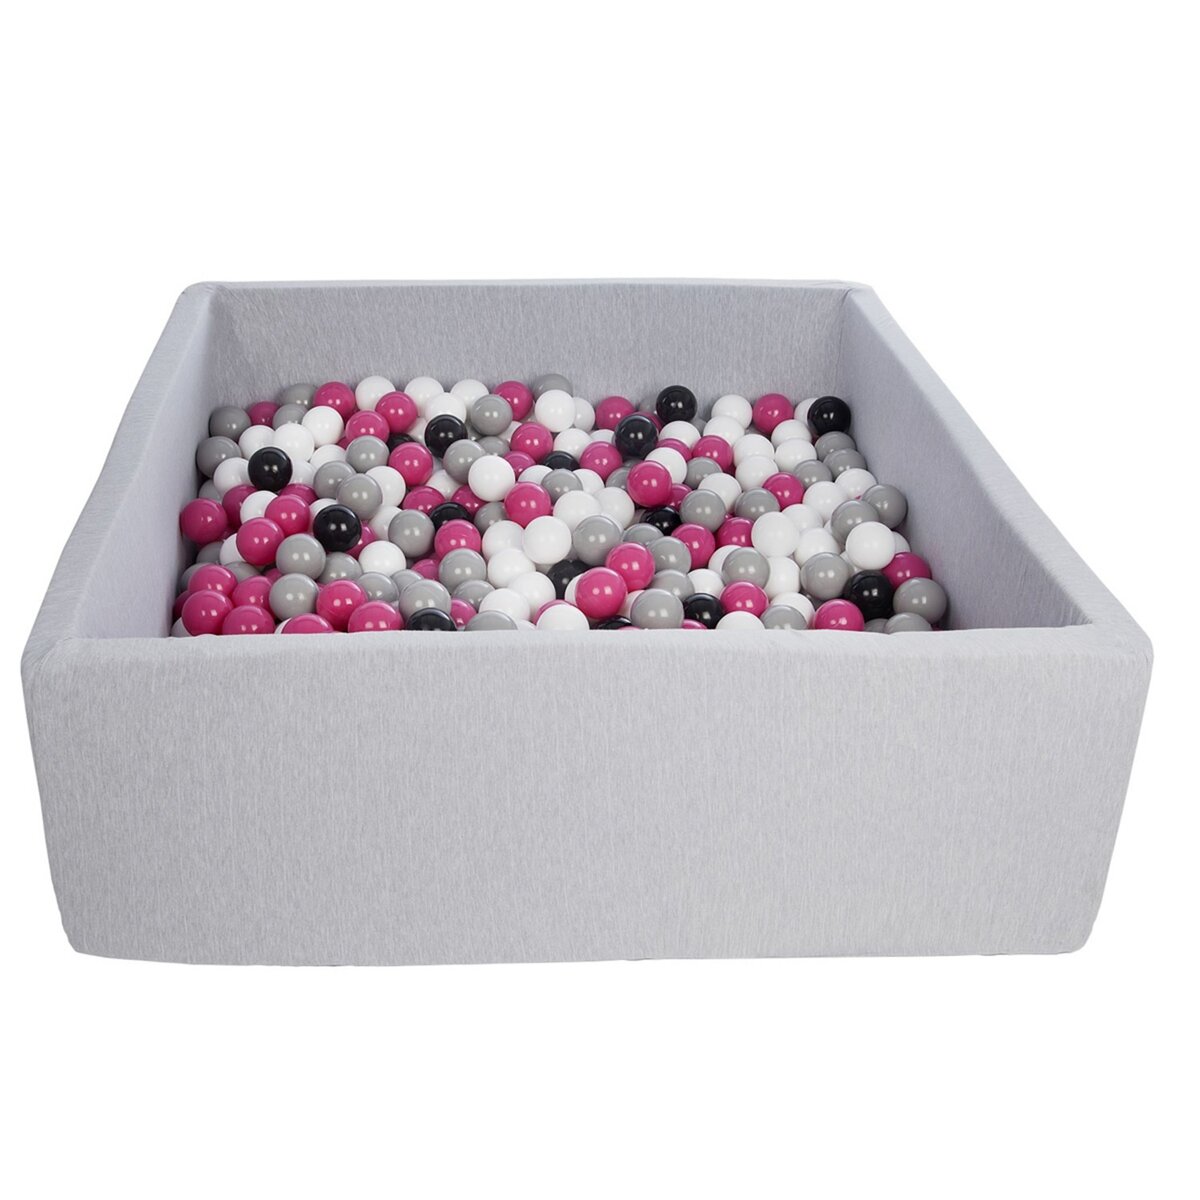  Piscine à balles pour enfant, 20x120 cm, Aire de jeu + 600 balles noir, blanc, rose,gris